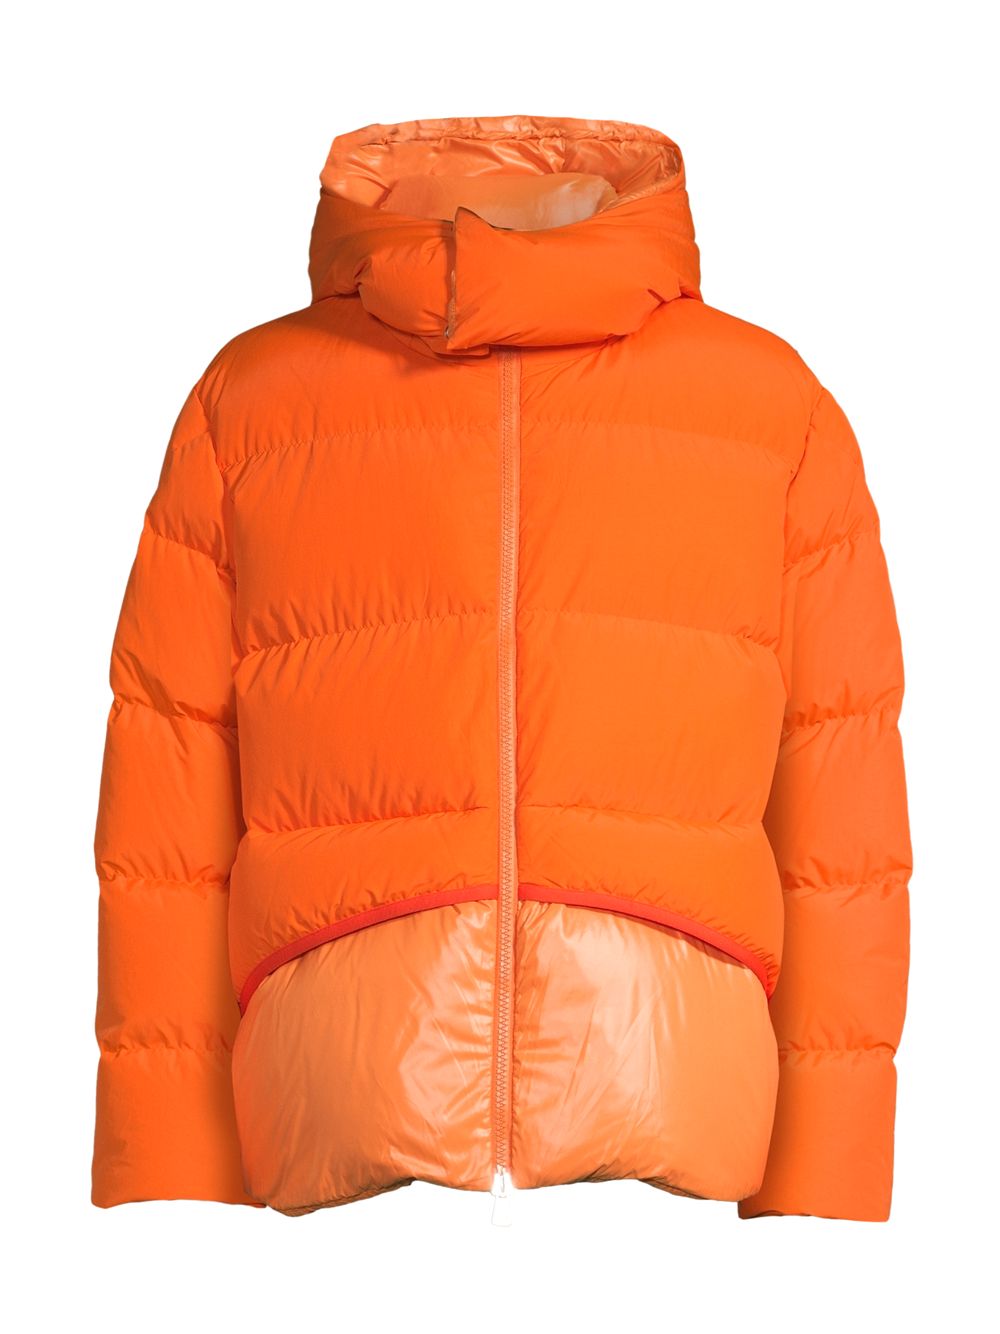 2 Куртка с капюшоном Moncler 1952 Achill Moncler Genius, оранжевый